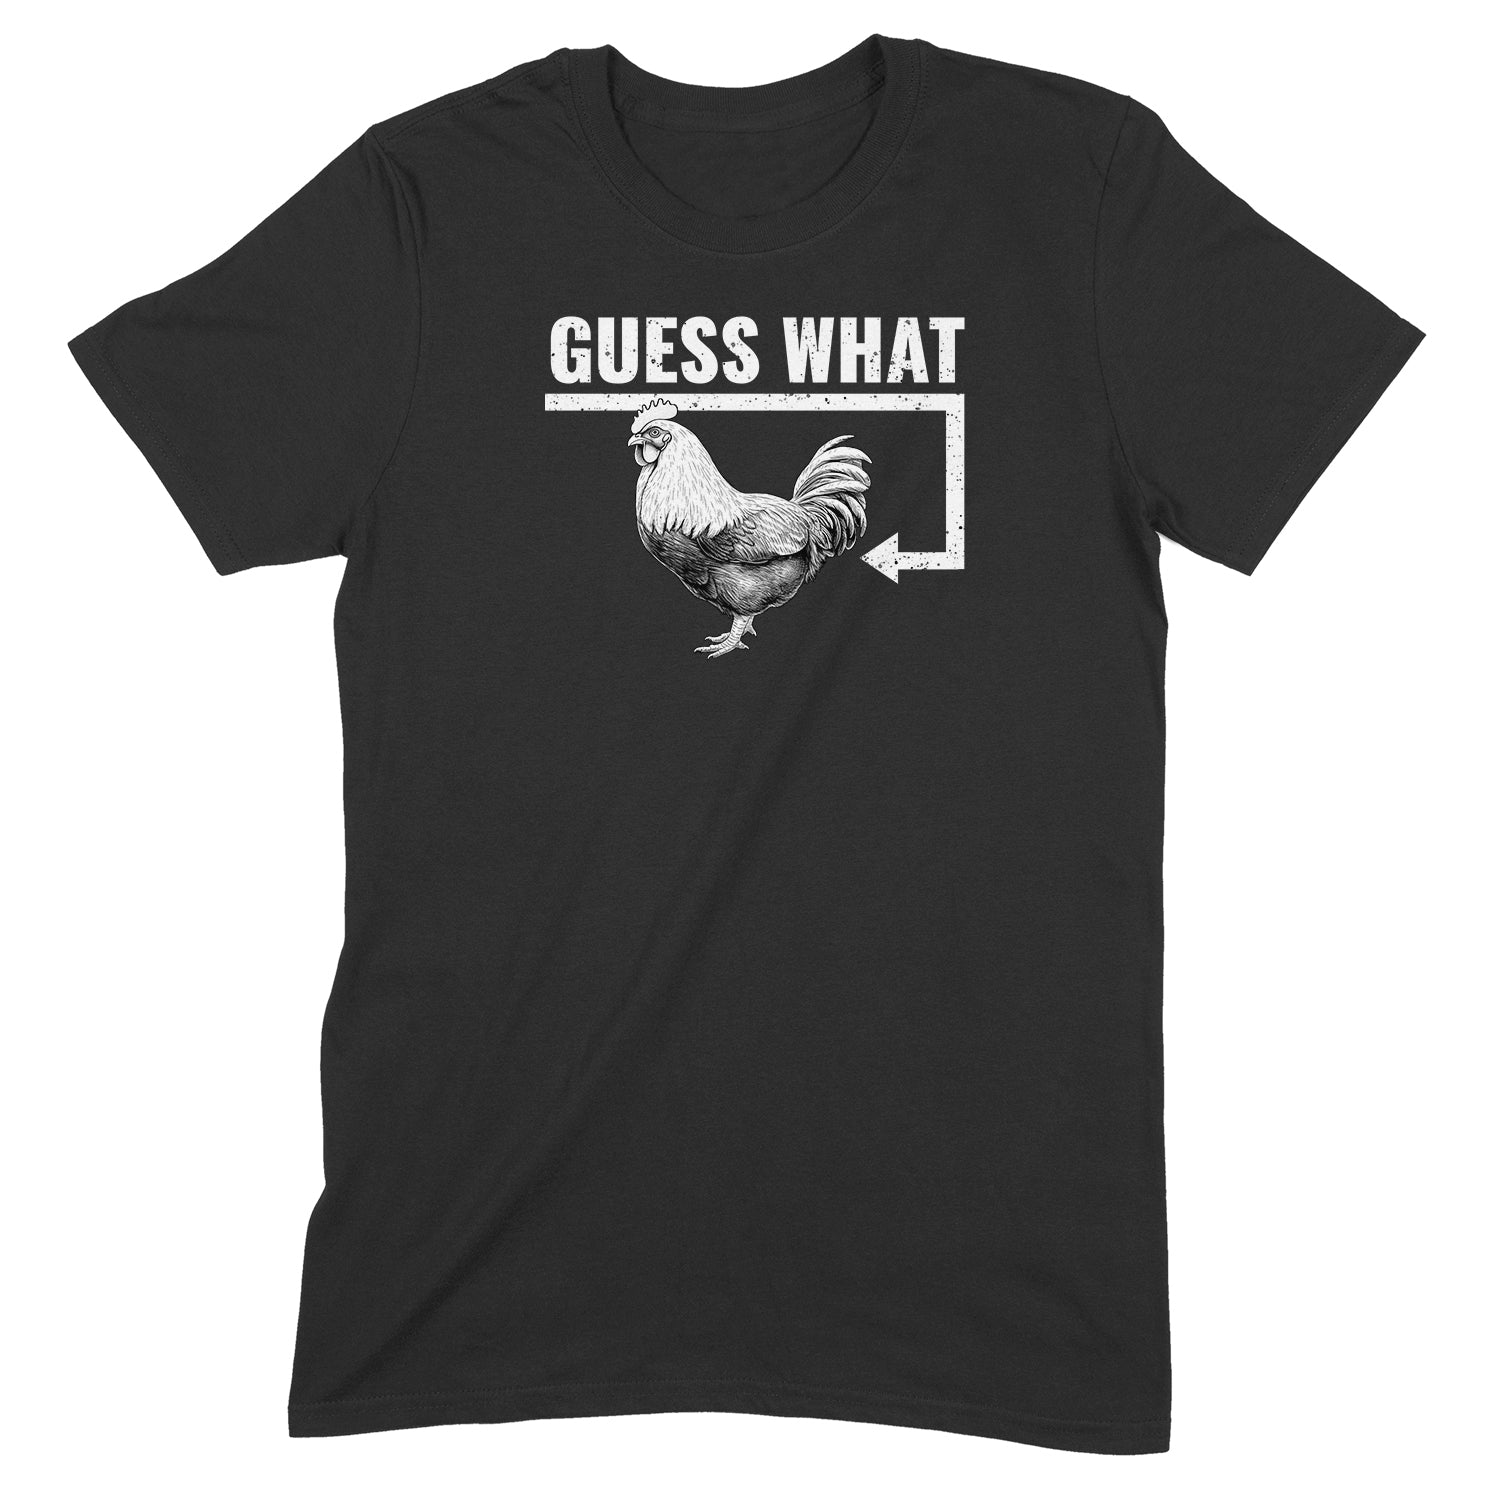 "Guess What, Chicken Butt" Premium Midweight Ringspun Cotton T-Shirt - Mens/Womens Fits